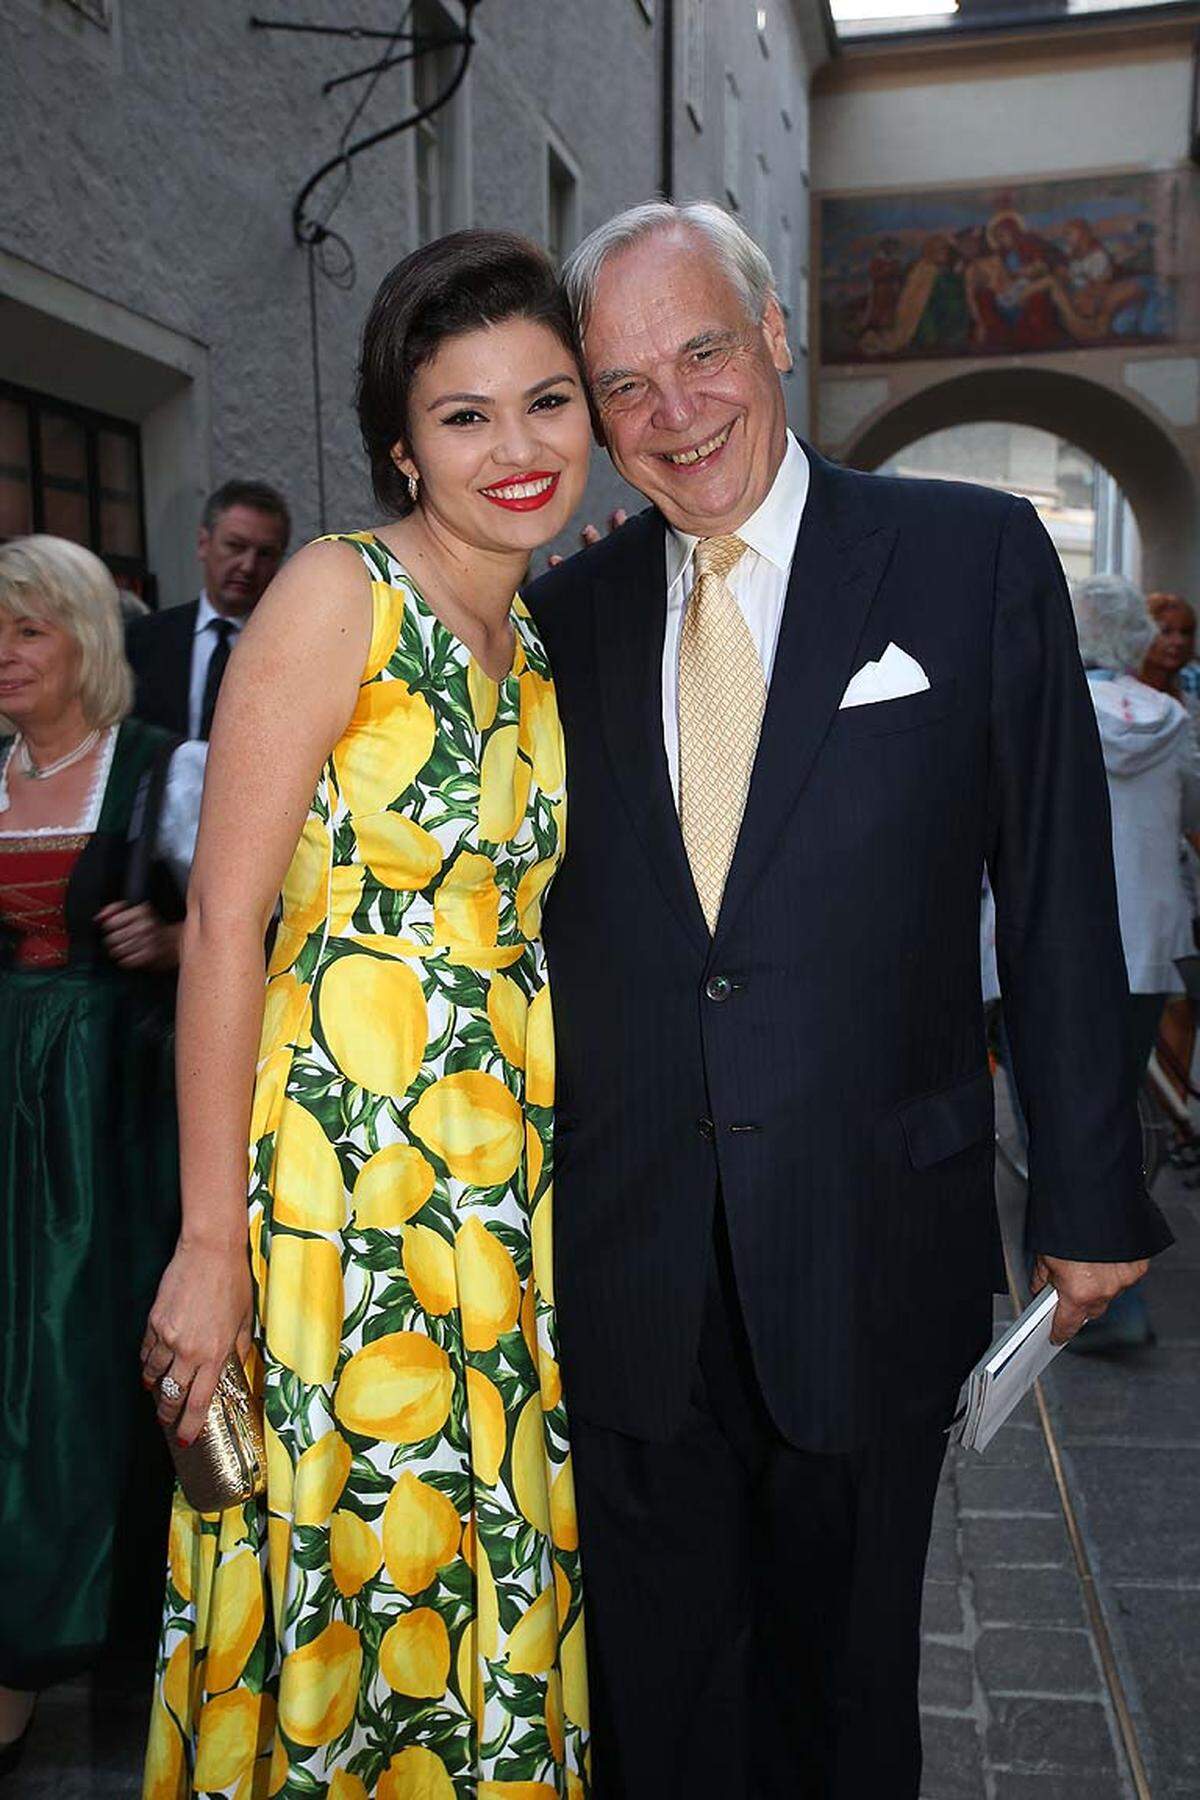 Festspielintendant Alexander Pereira mit seiner hübschen Lebensgefährtin Daniela de Souza bei seinem vorletzten "Jedermann", er wechselt 2015 nach Mailand.